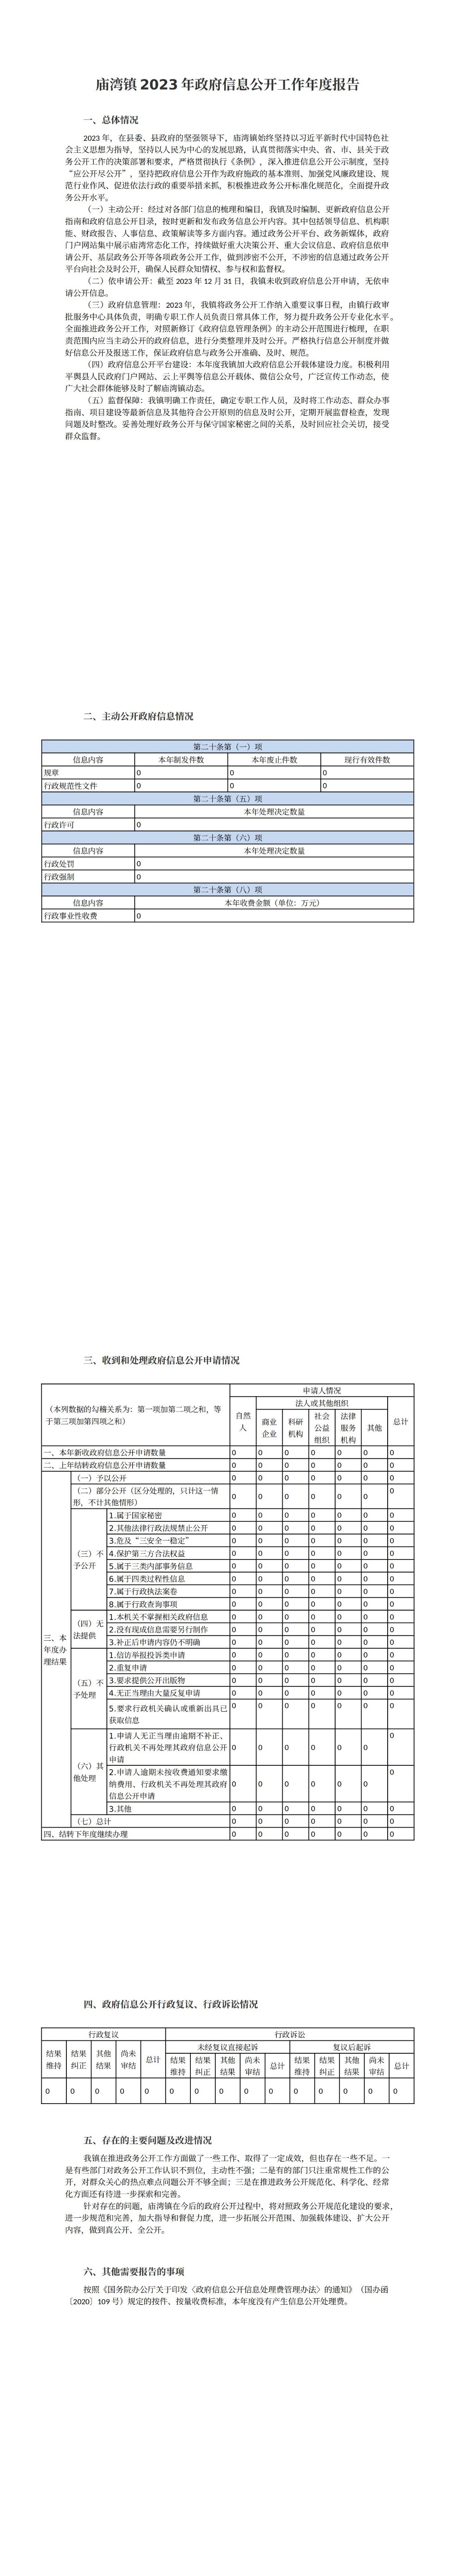 庙湾镇2023年政府信息公开工作年度报告 (1)_00.jpg